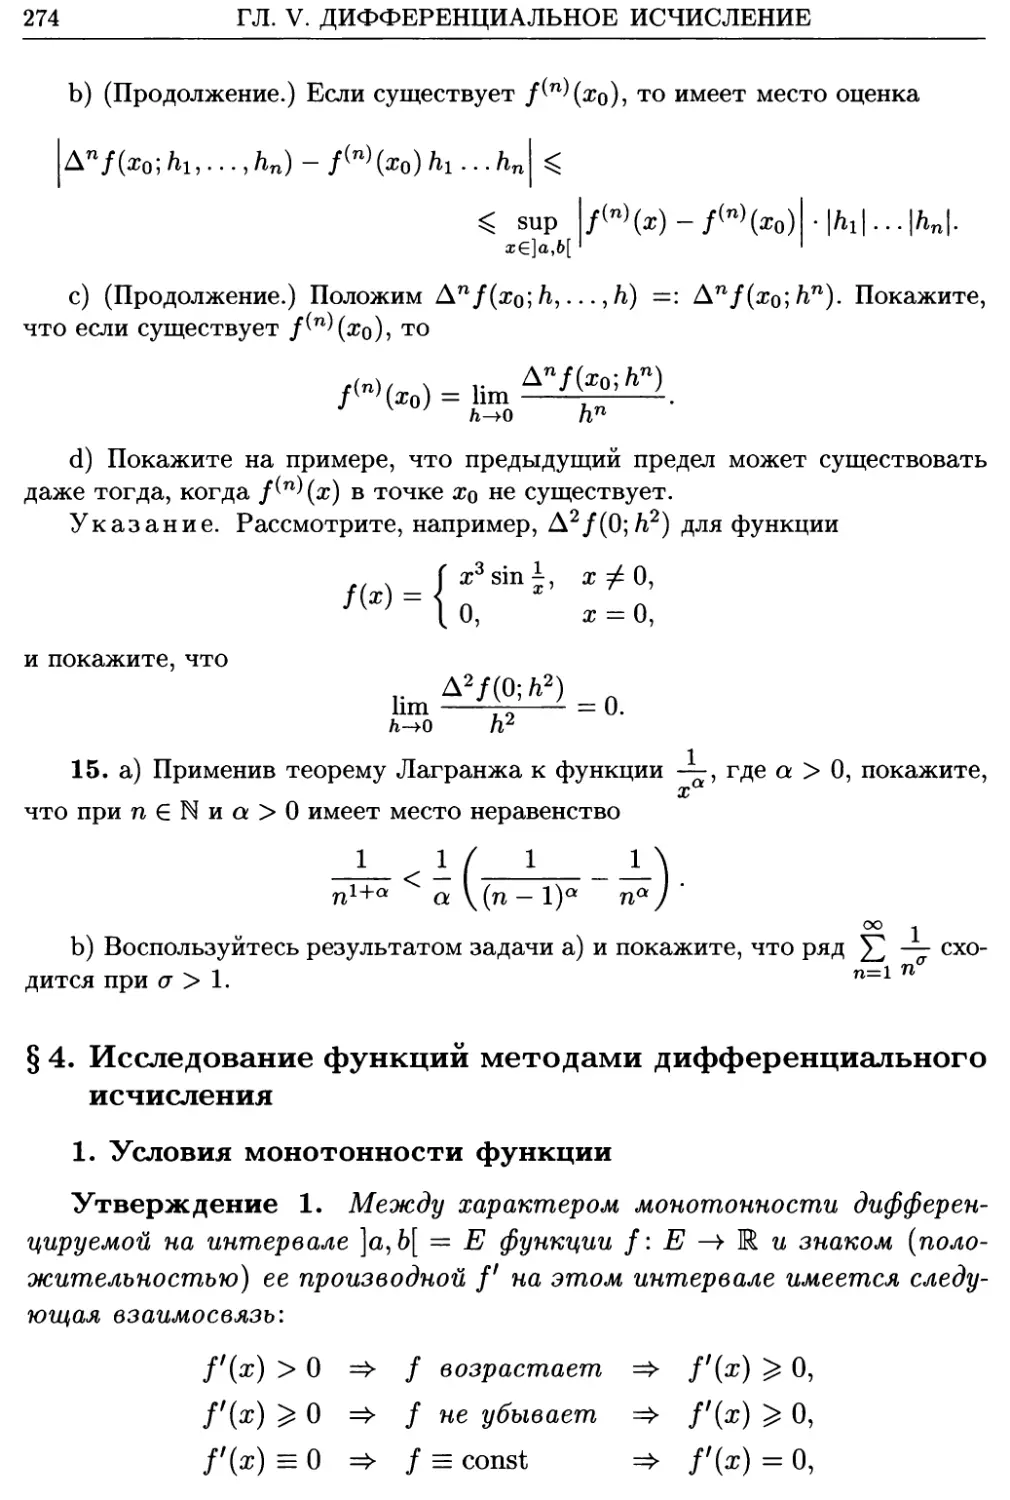 §4. Исследование функций методами дифференциального исчисления